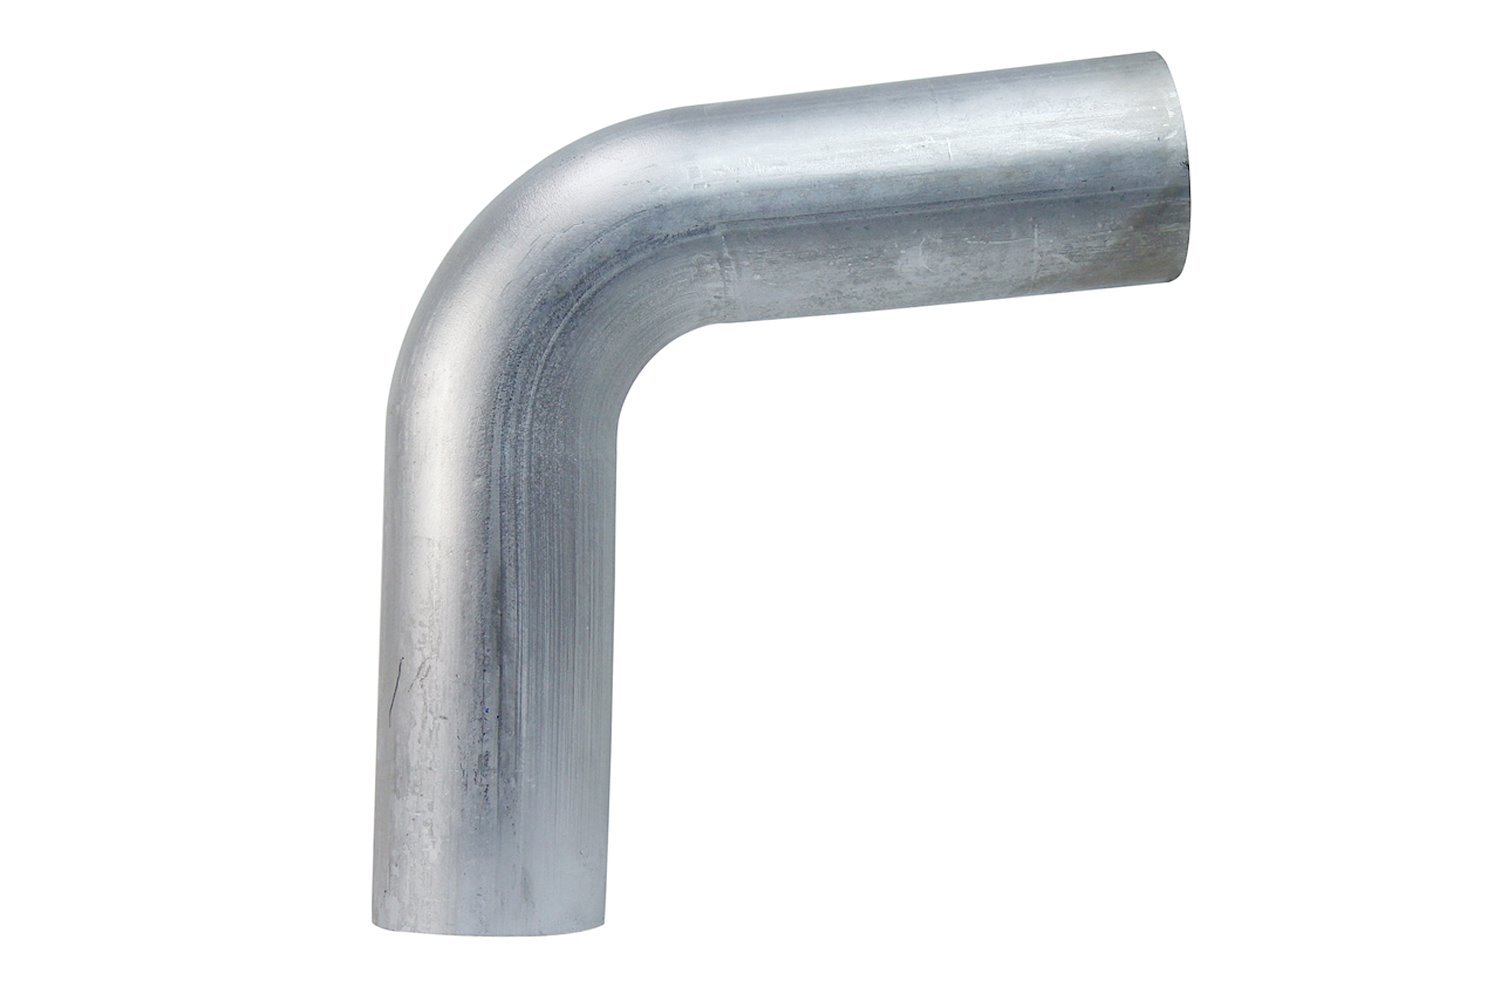 AT80-250-CLR-4 Aluminum Elbow Tube, 6061 Aluminum, 80-Degree Bend Elbow Tubing, 2-1/2 in. OD, Large Radius, 4 in. CLR